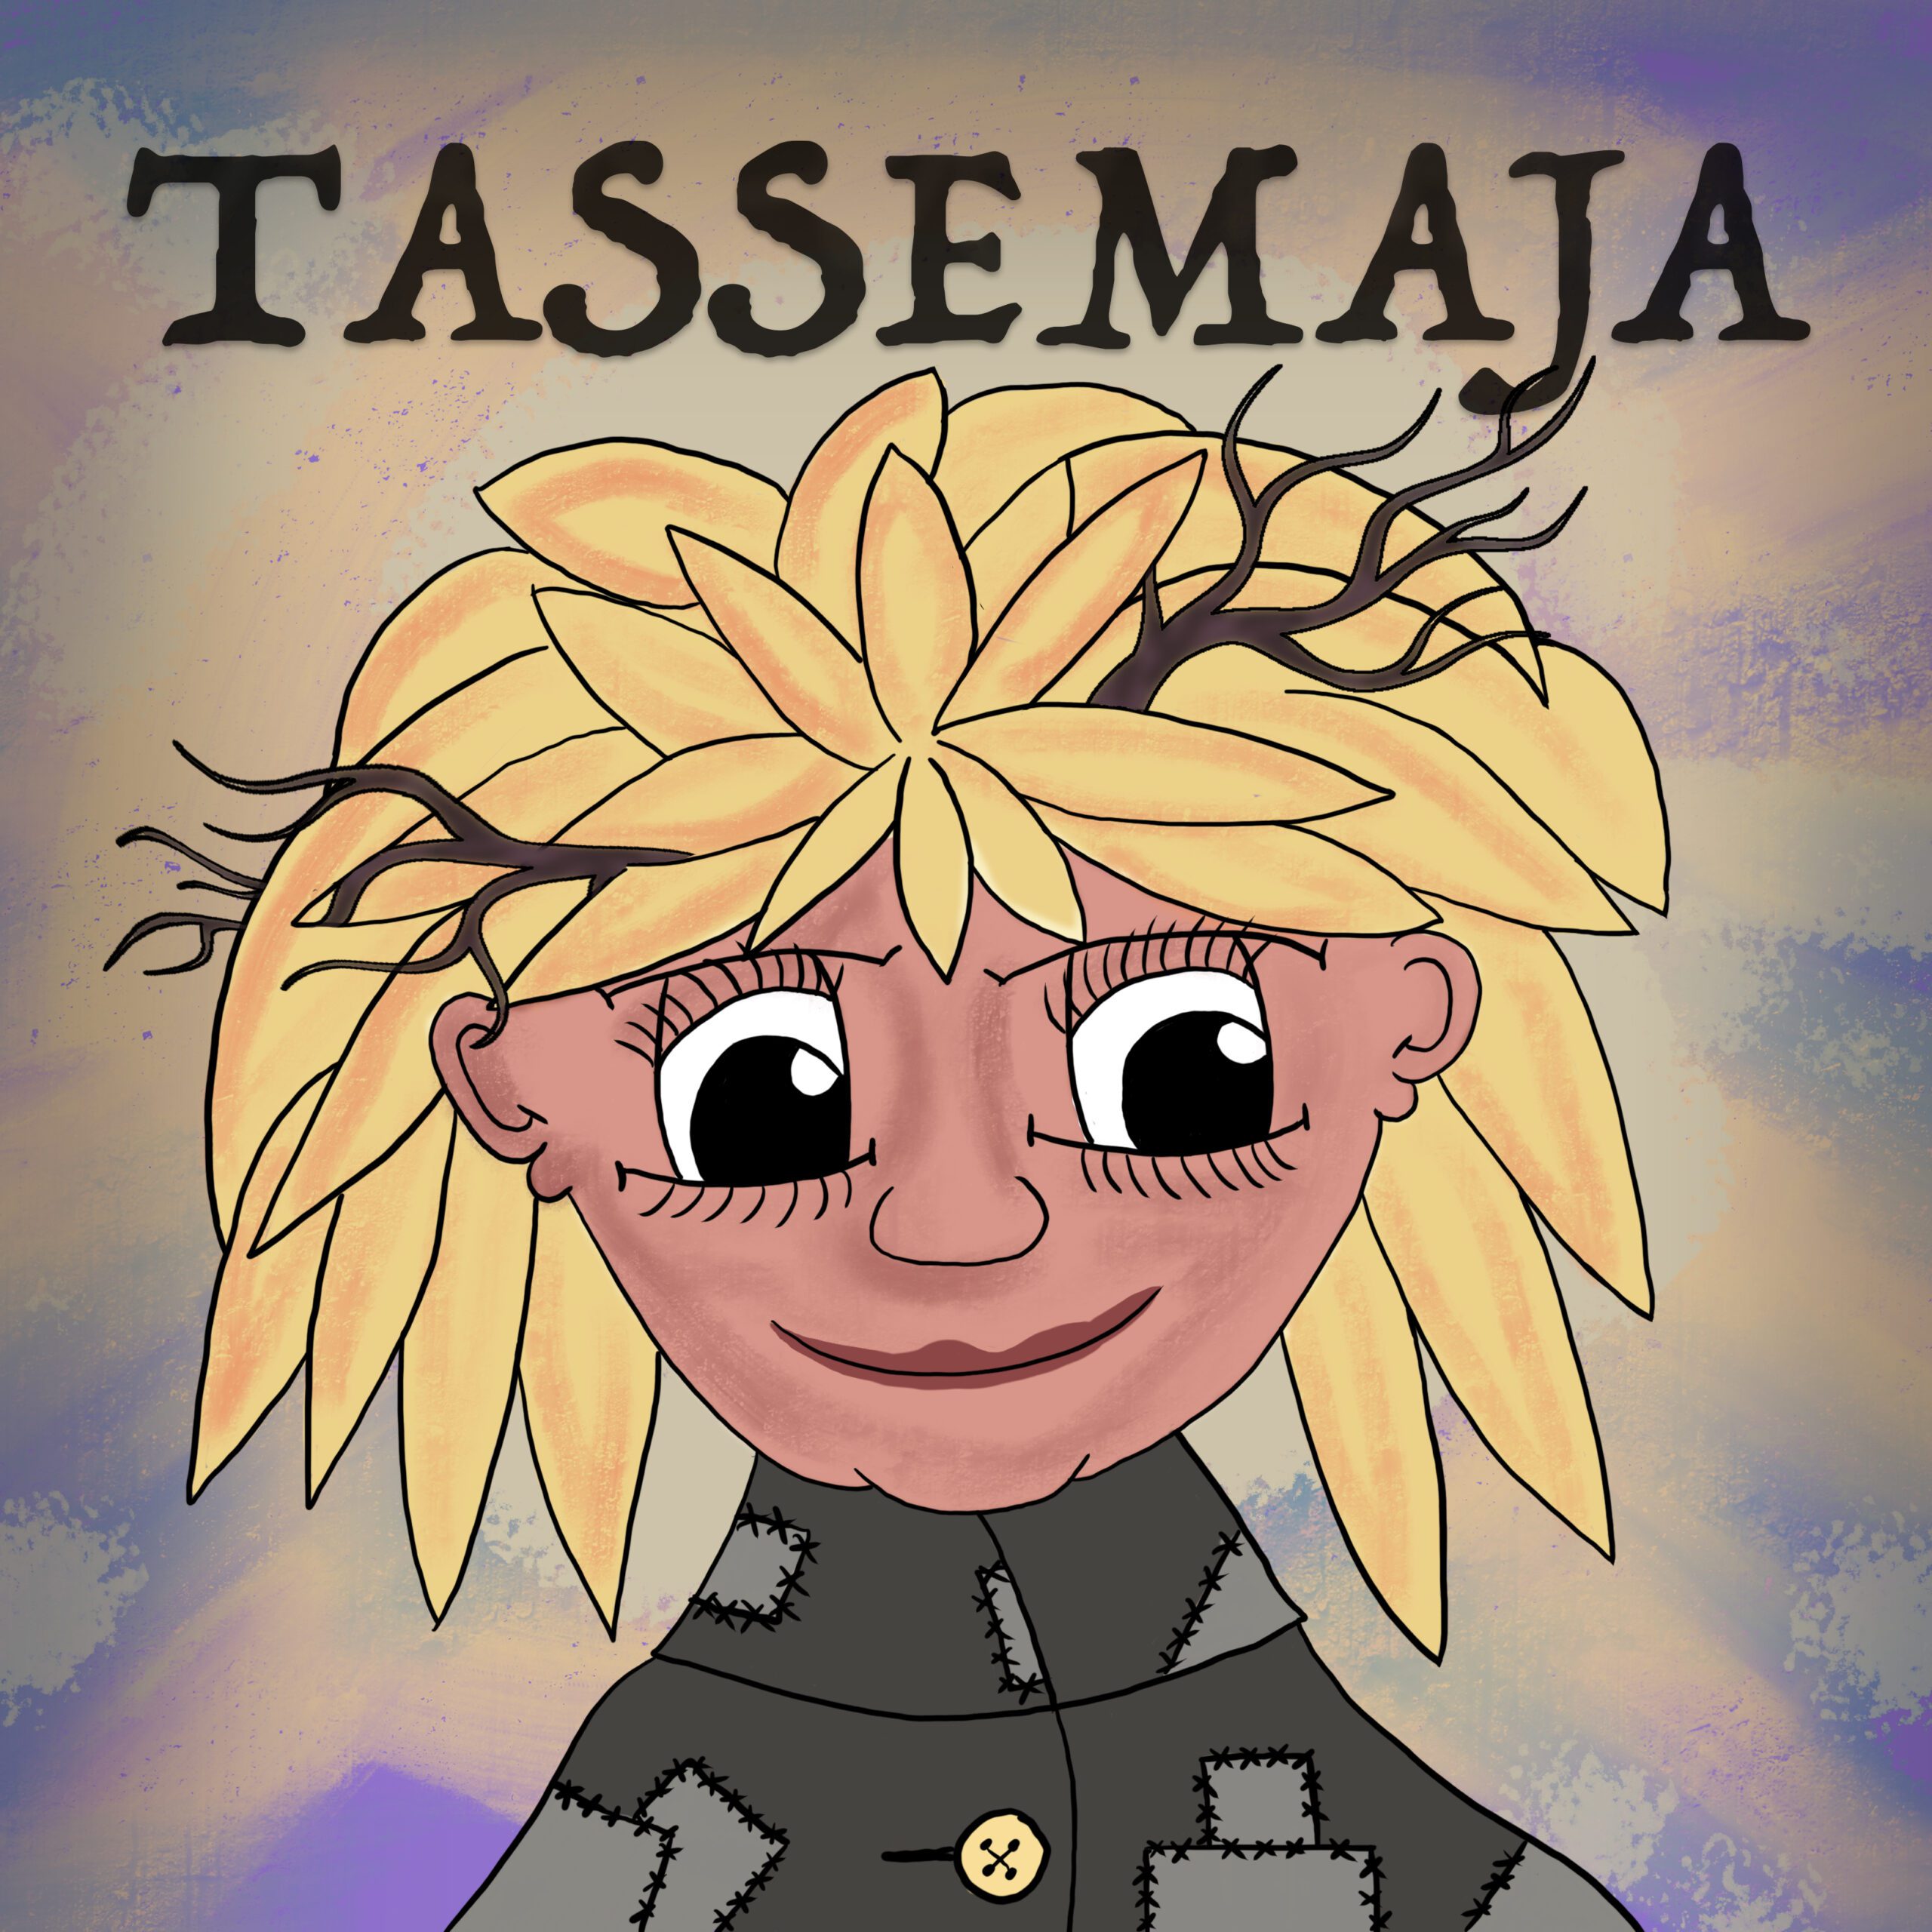 Tasse-Maja är huvudperson i sagan och hon är ett ungt troll med grenar i håret och lappade kläder